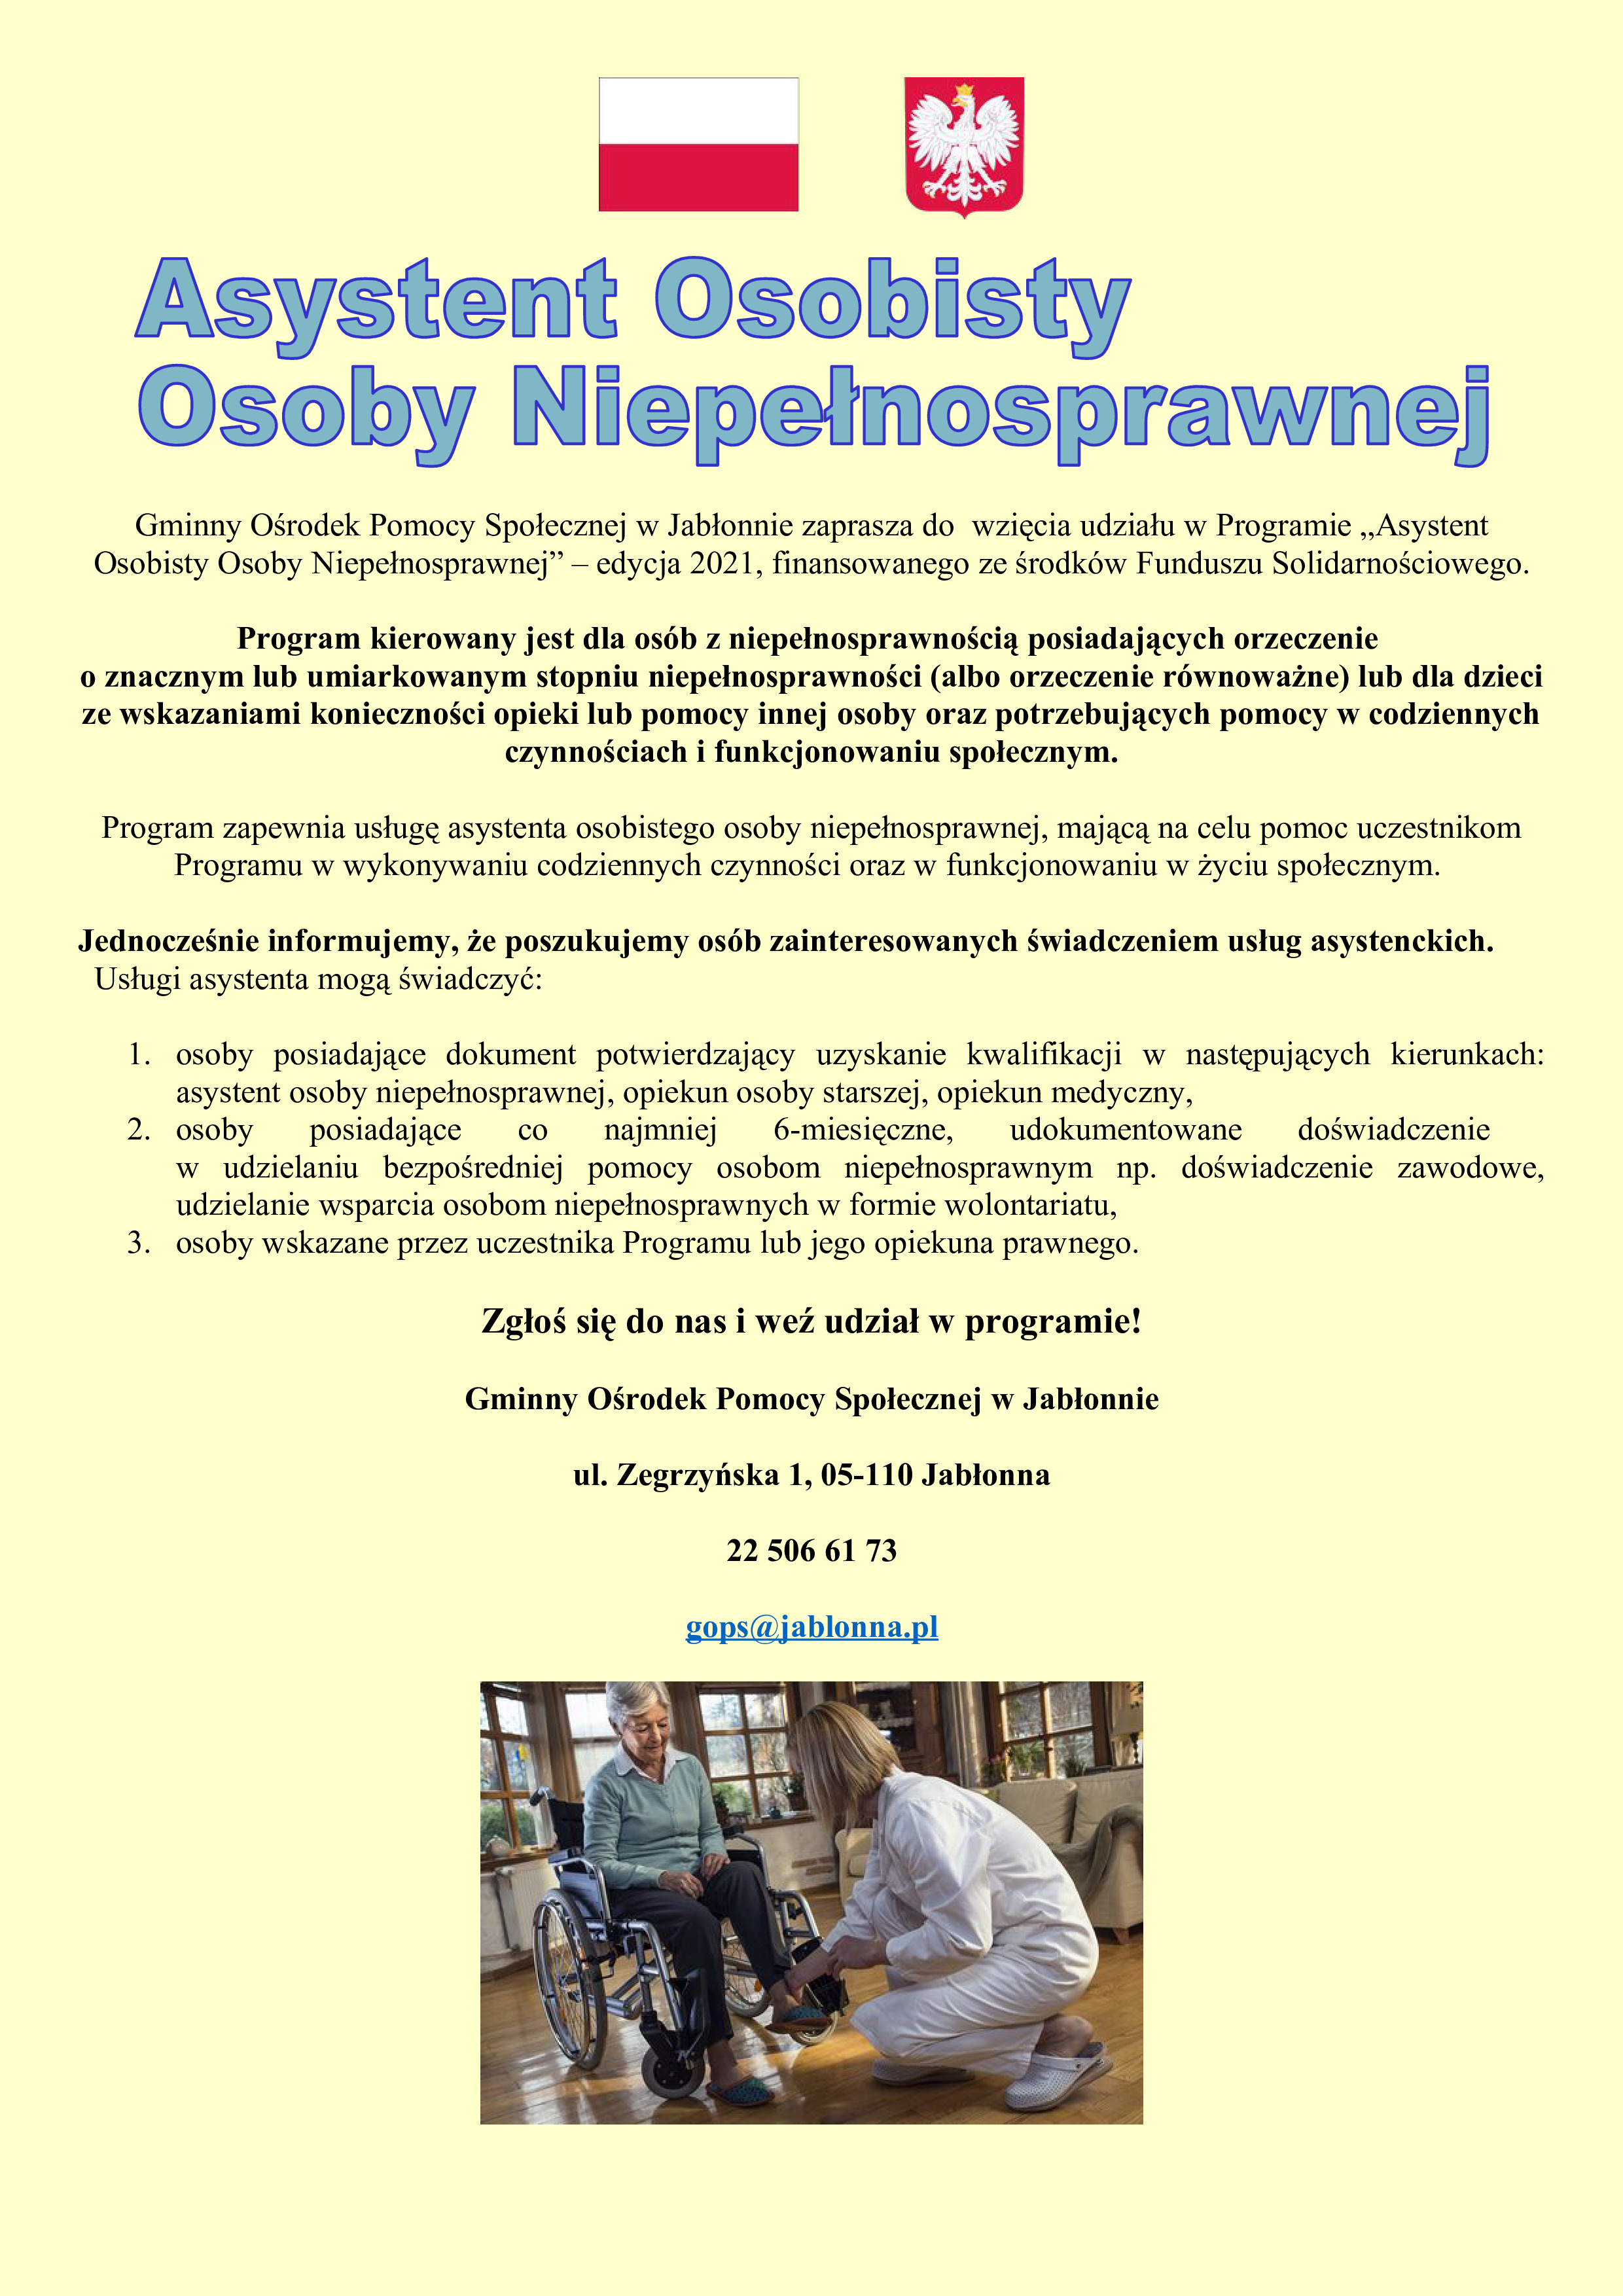 Plakat informujący o programie Asystent Osobisty Osoby Niepełnosprawnej